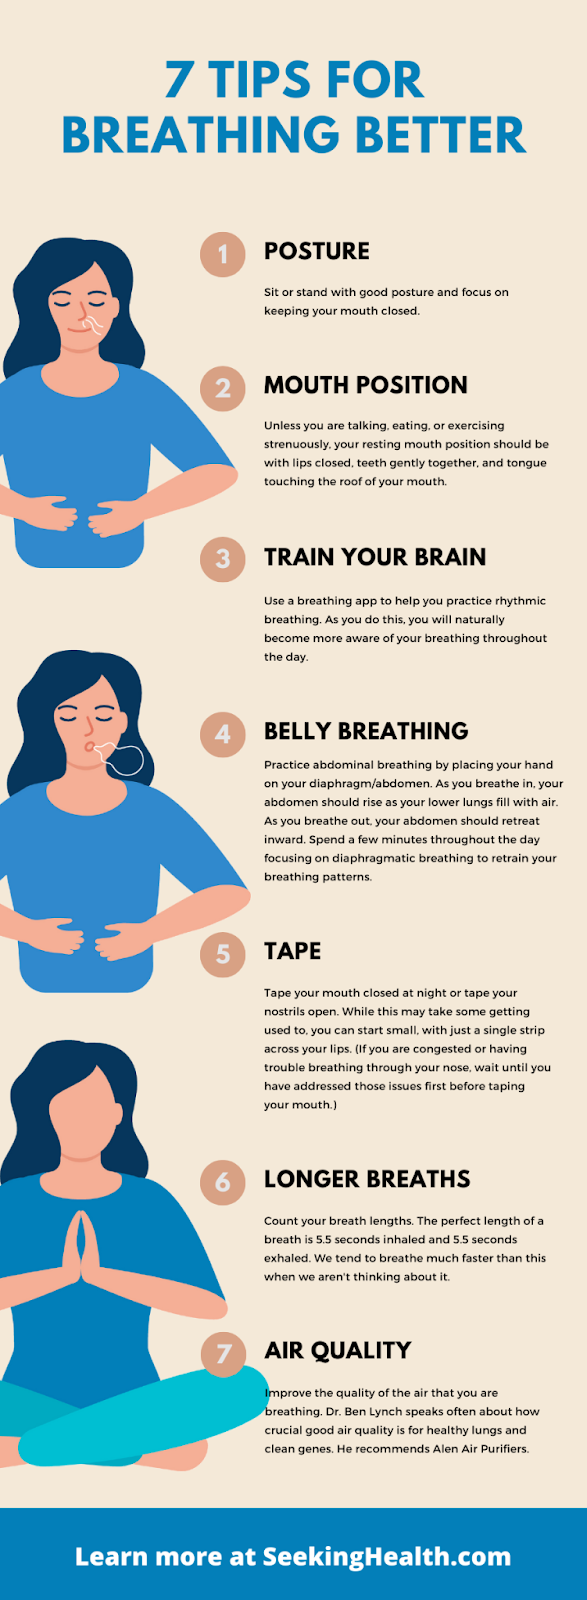 7 Tips for Breathing Better